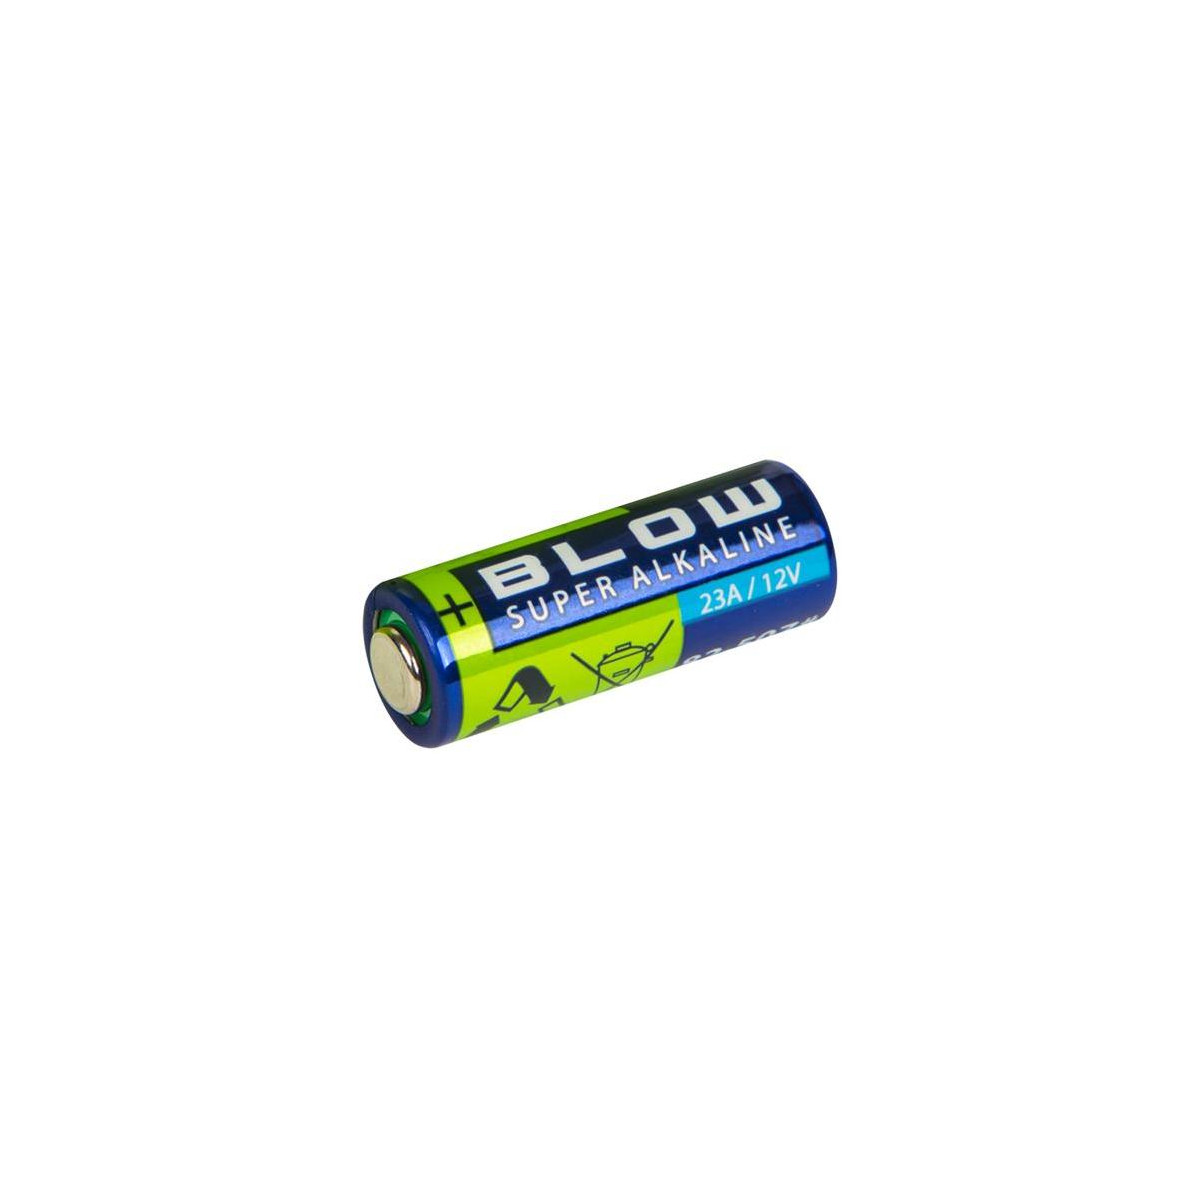 More about Baterie 23A (12V) alkalická BLOW Super Alkaline 1ks / shrink